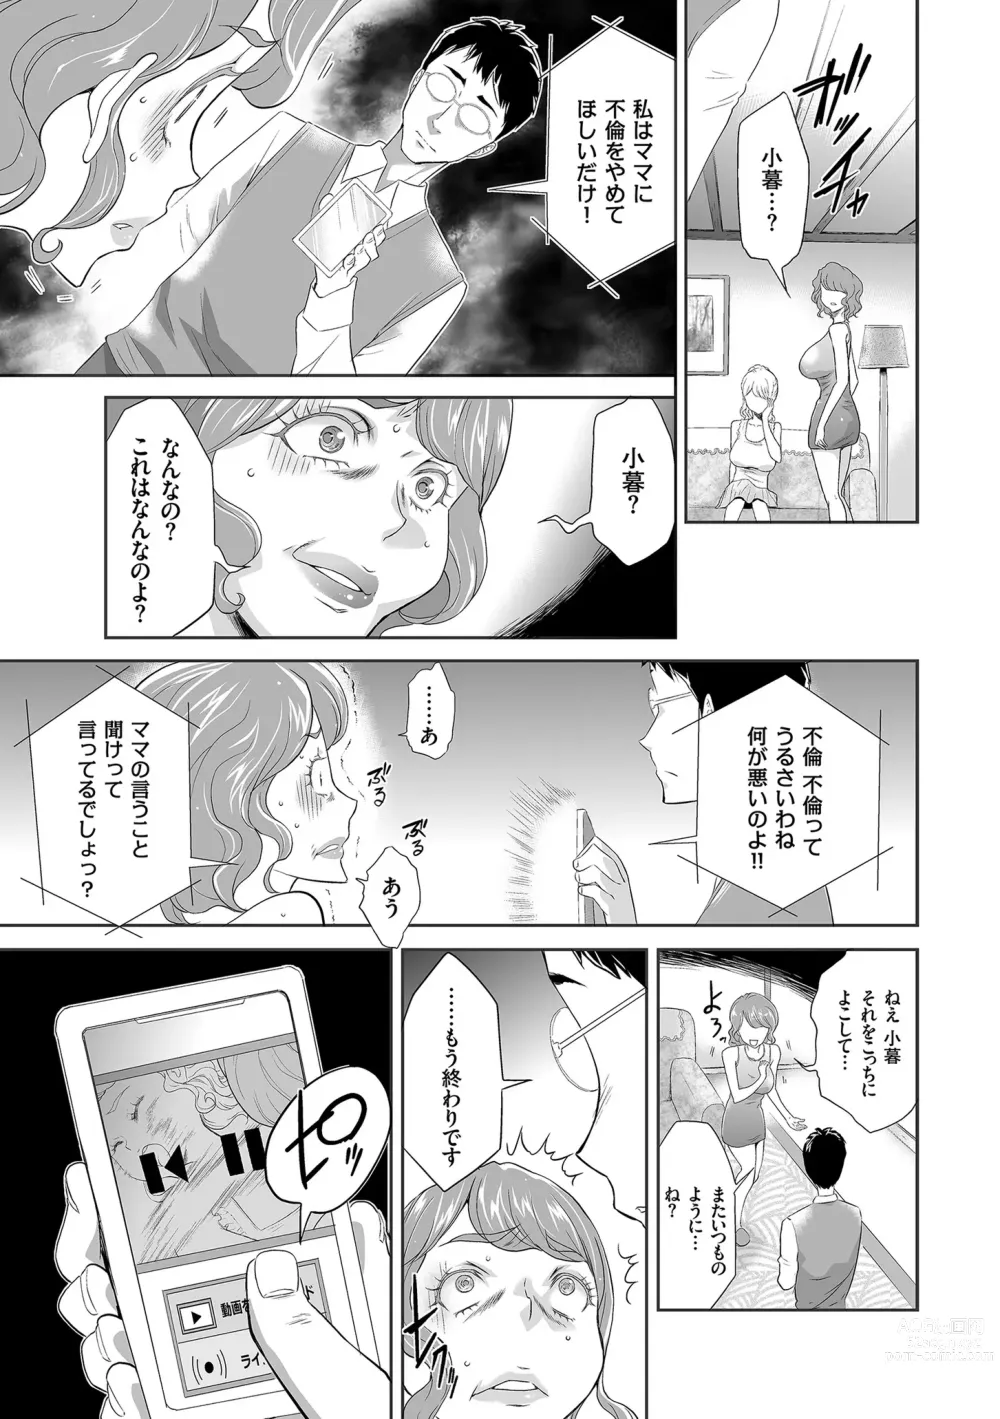 Page 189 of manga Idol Kankin Live!